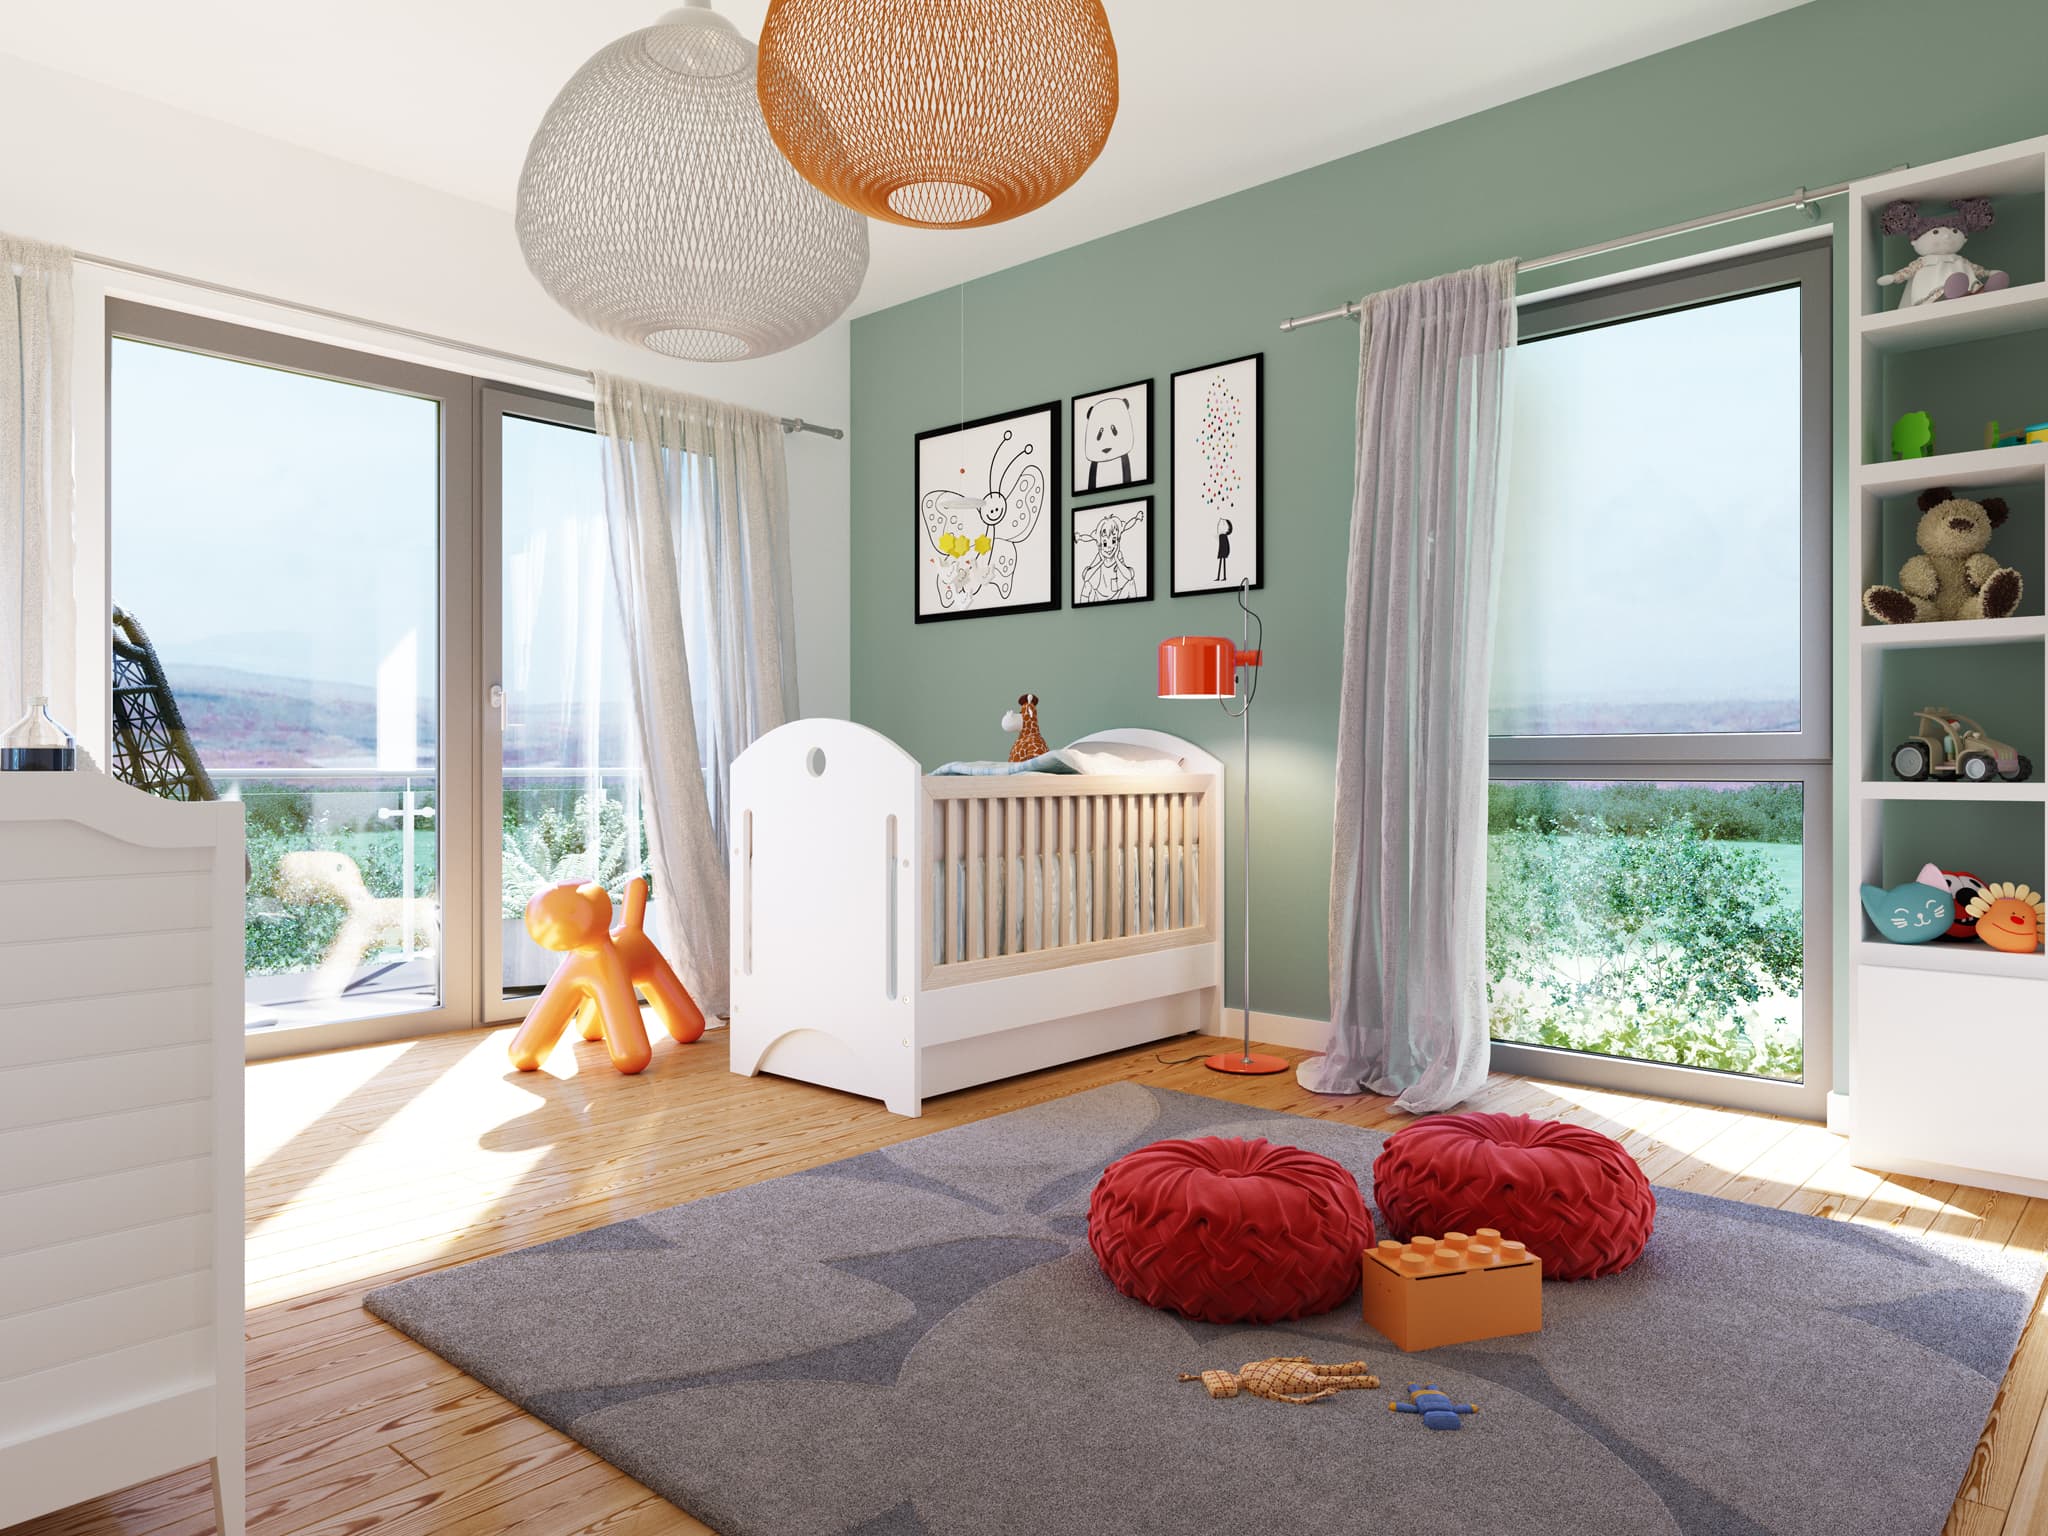 Kinderzimmer Ideen - Inneneinrichtung Fertighaus SUNSHINE 165 V3 von Living Haus - HausbauDirekt.de